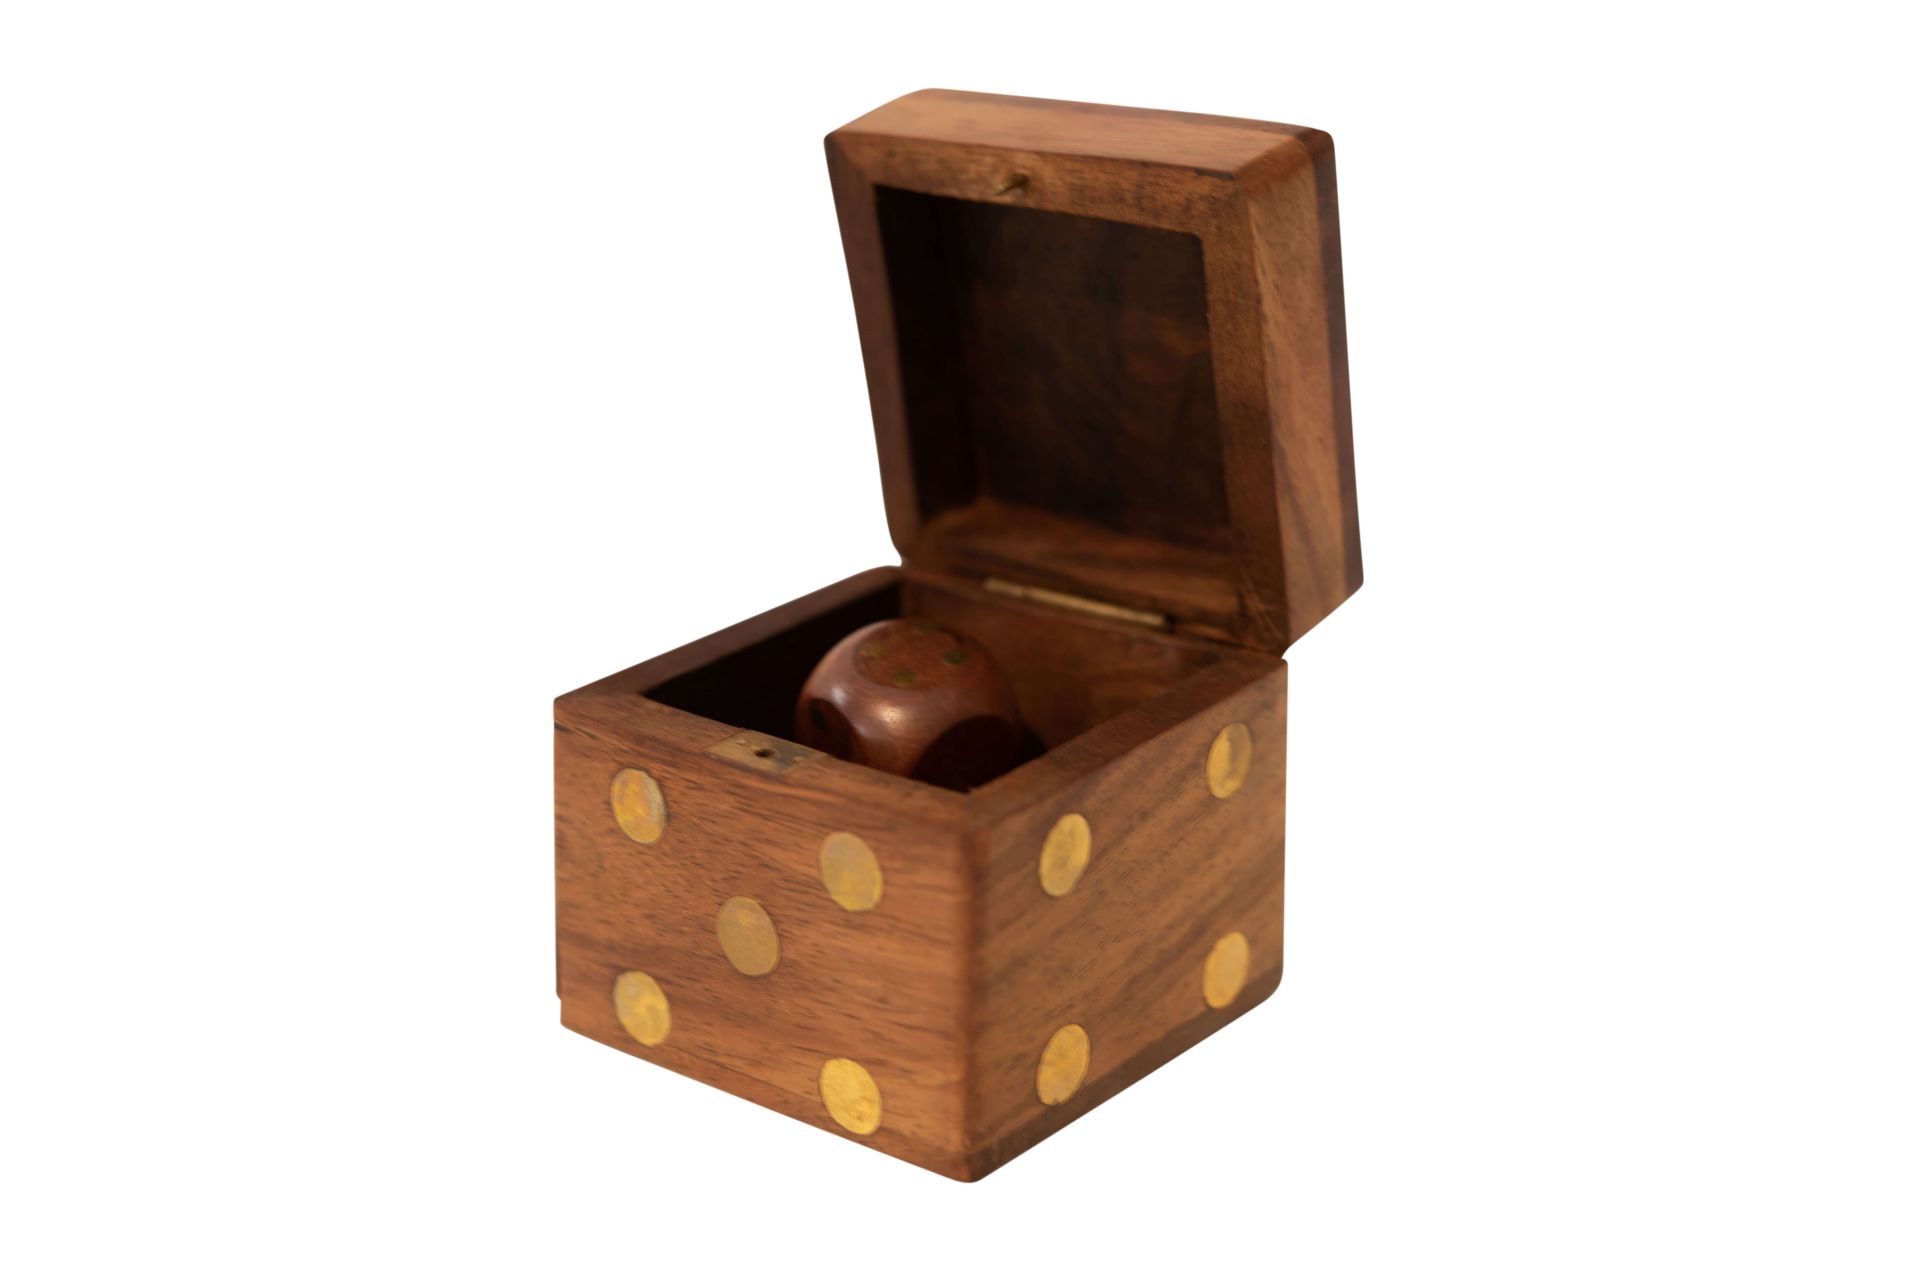 Holzkiste aus Rosenholz mit Würfeln und Messing Punkten | Wooden Box Made of Rosewood with Cubes and - Bild 4 aus 5